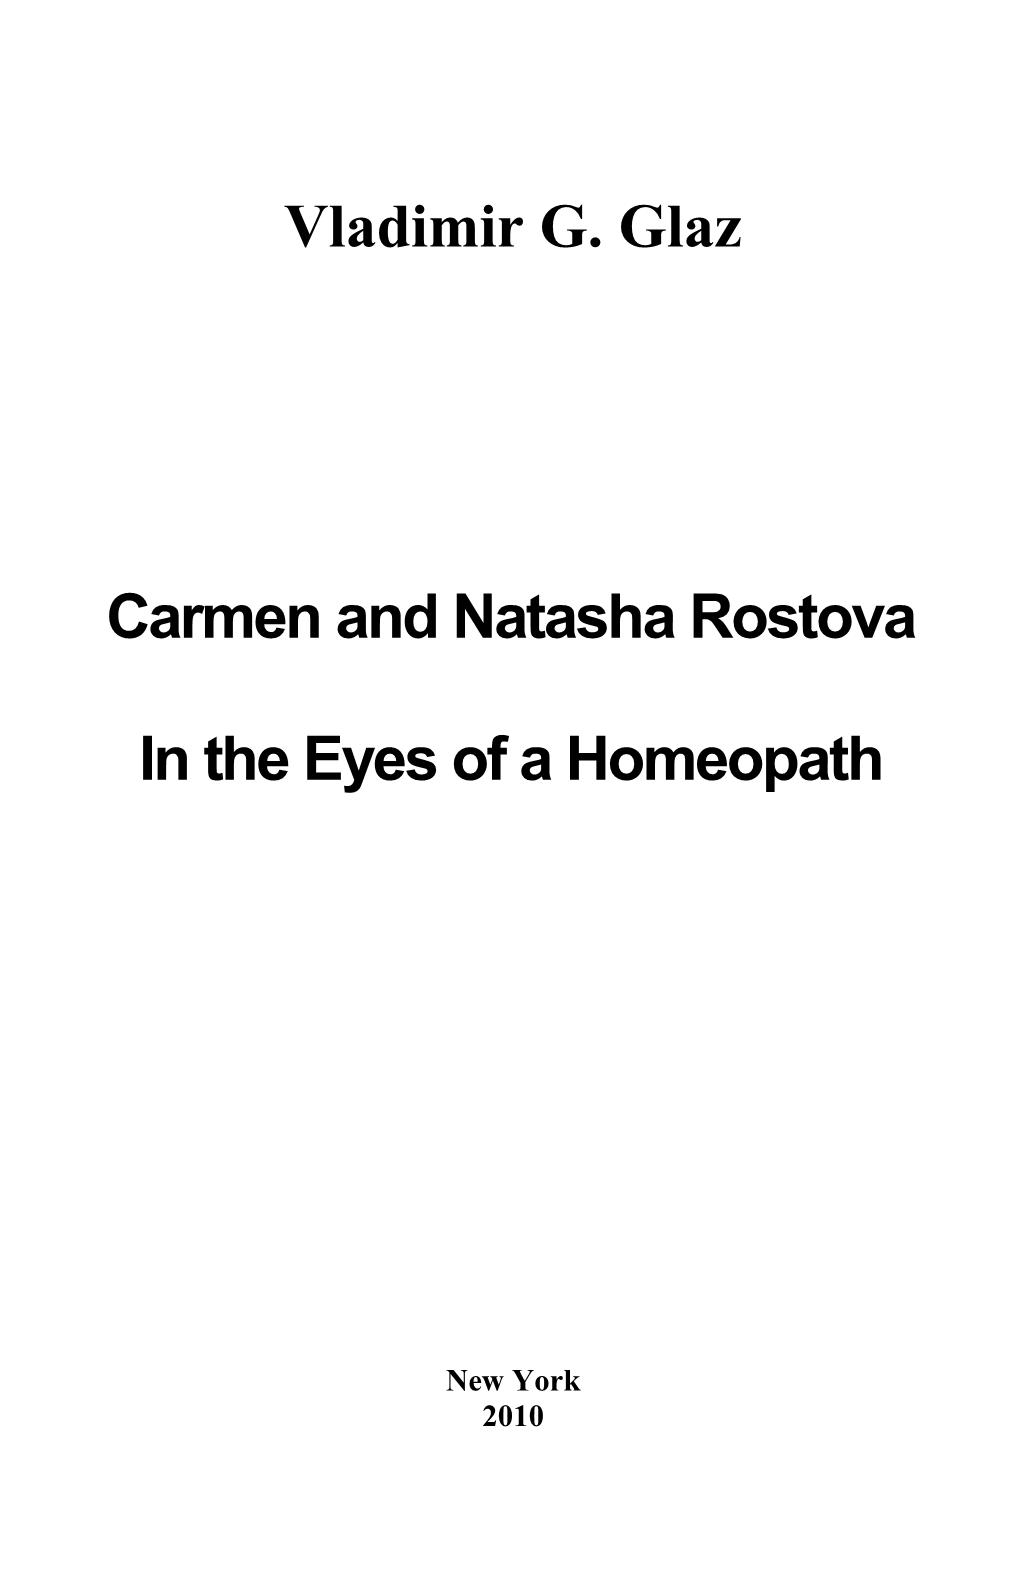 Carmen and Natasha Rostova